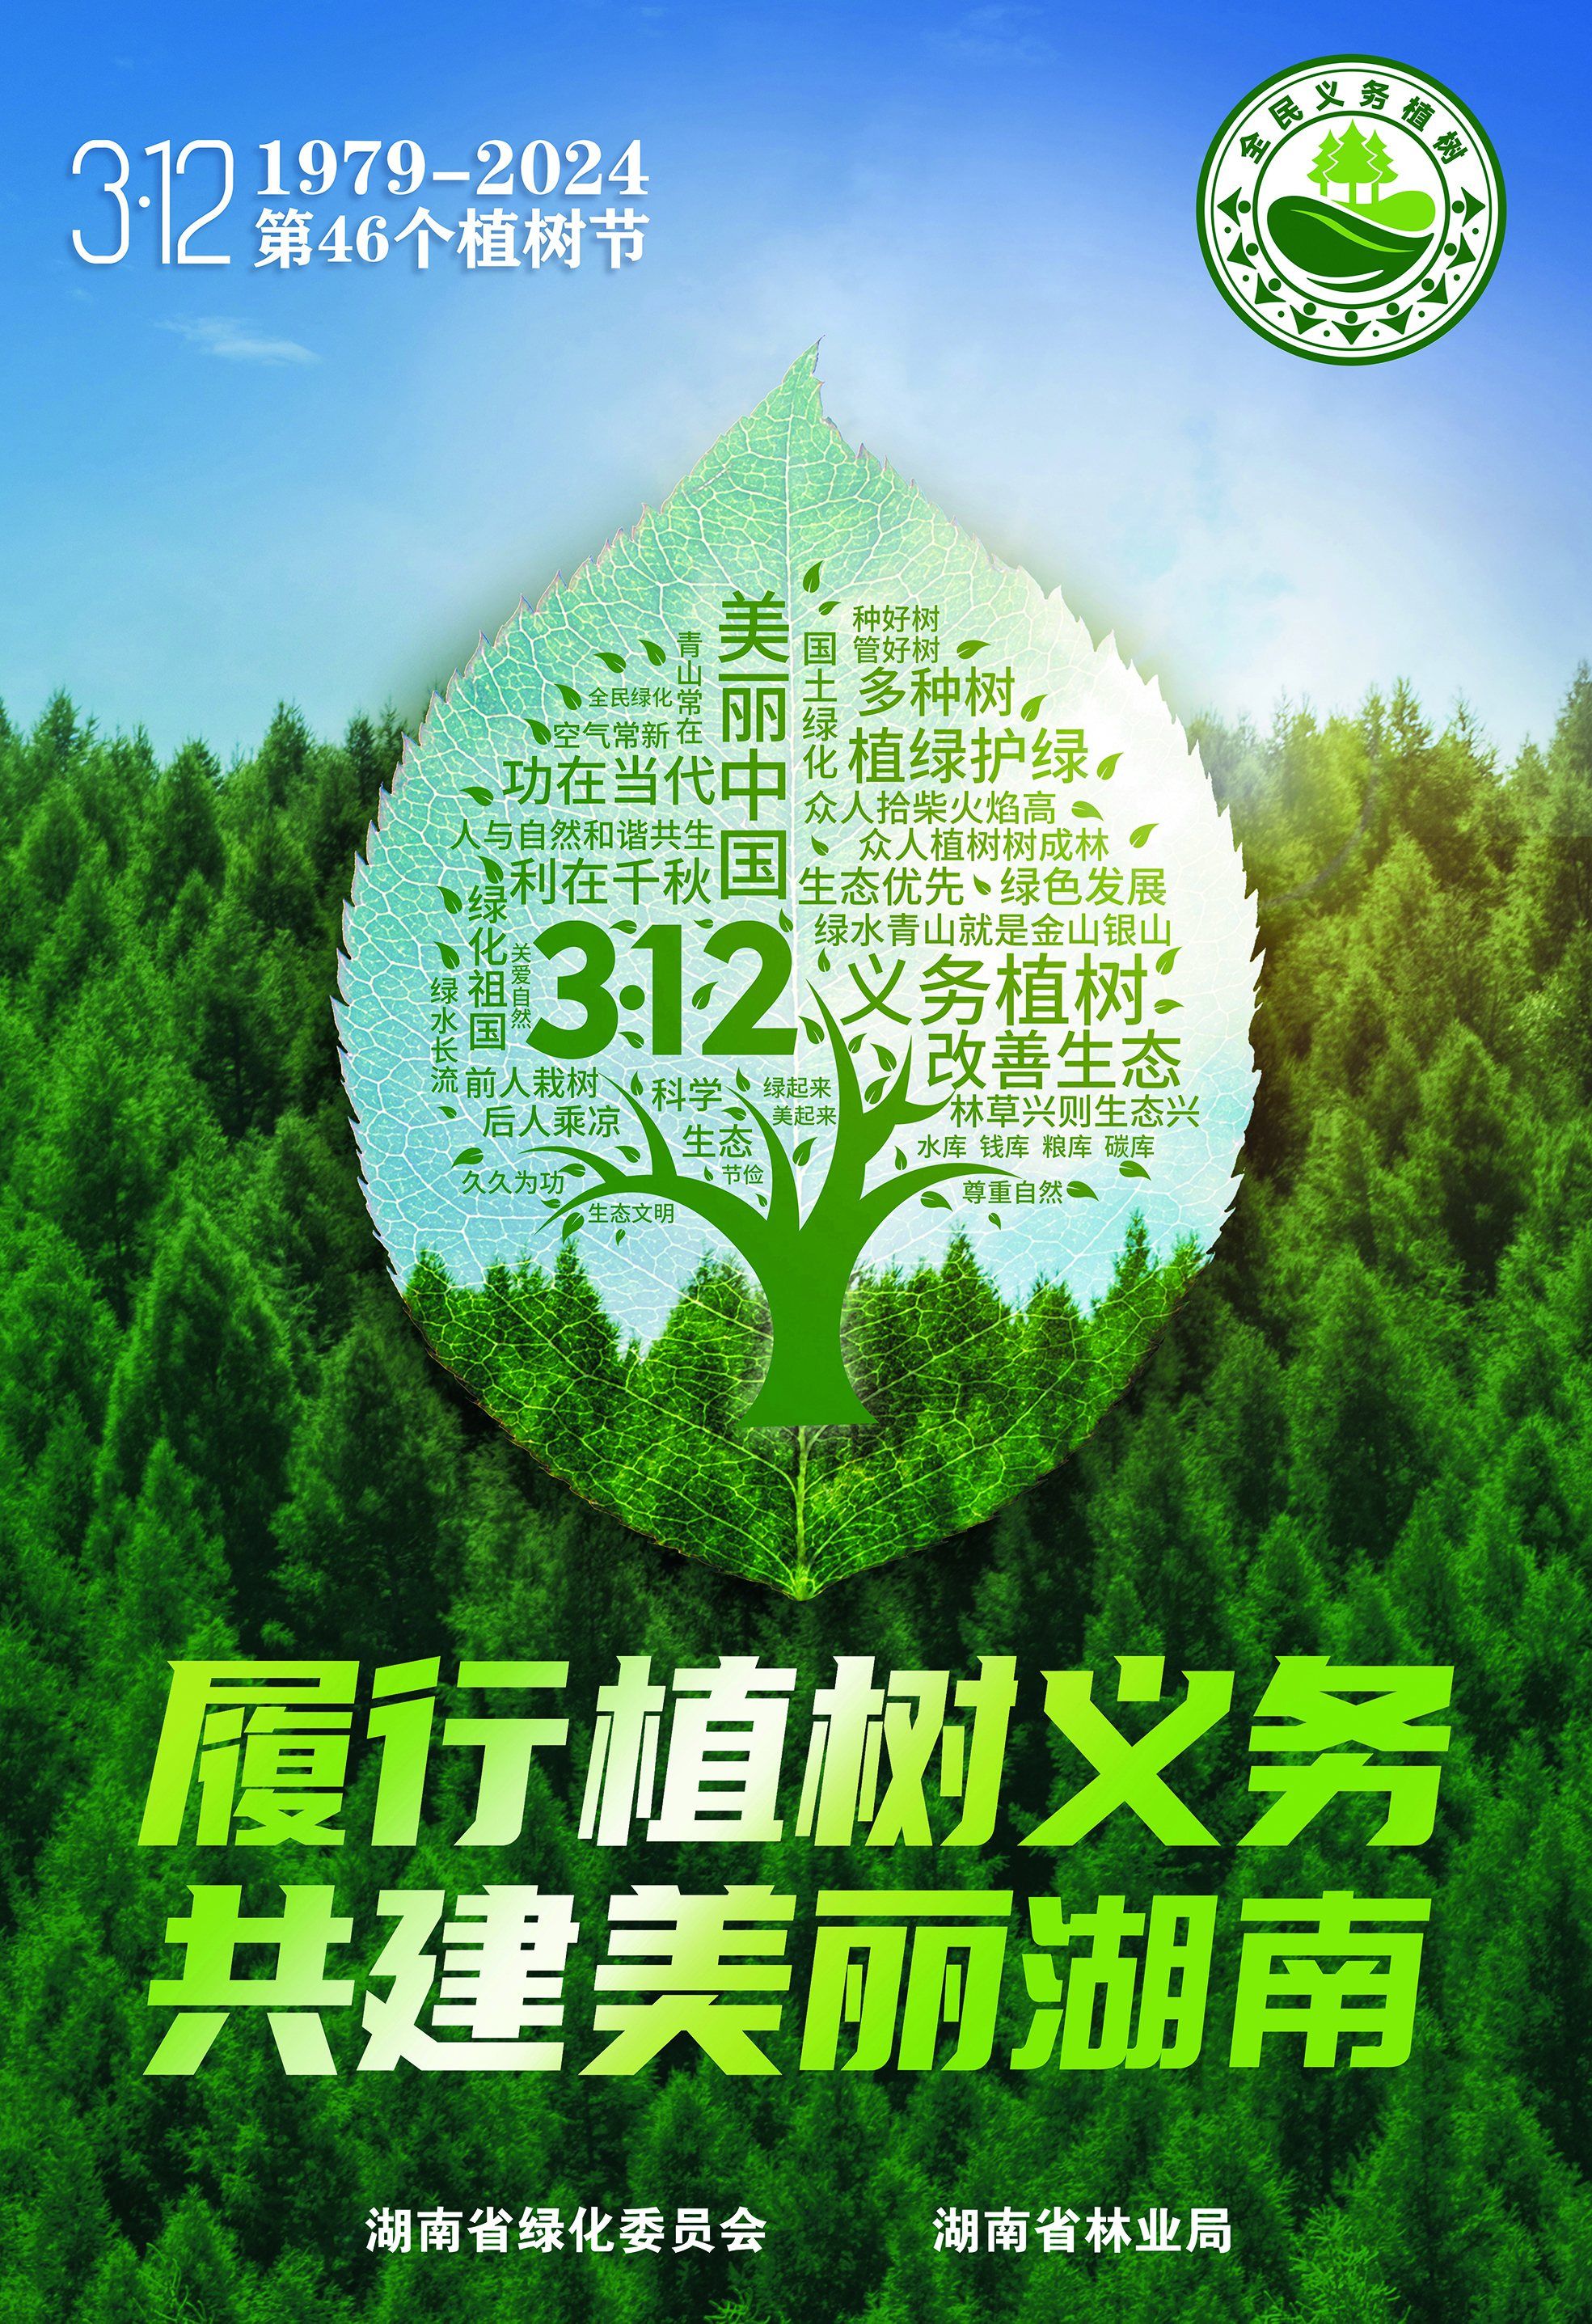 2023年湖南省国土绿化状况公报